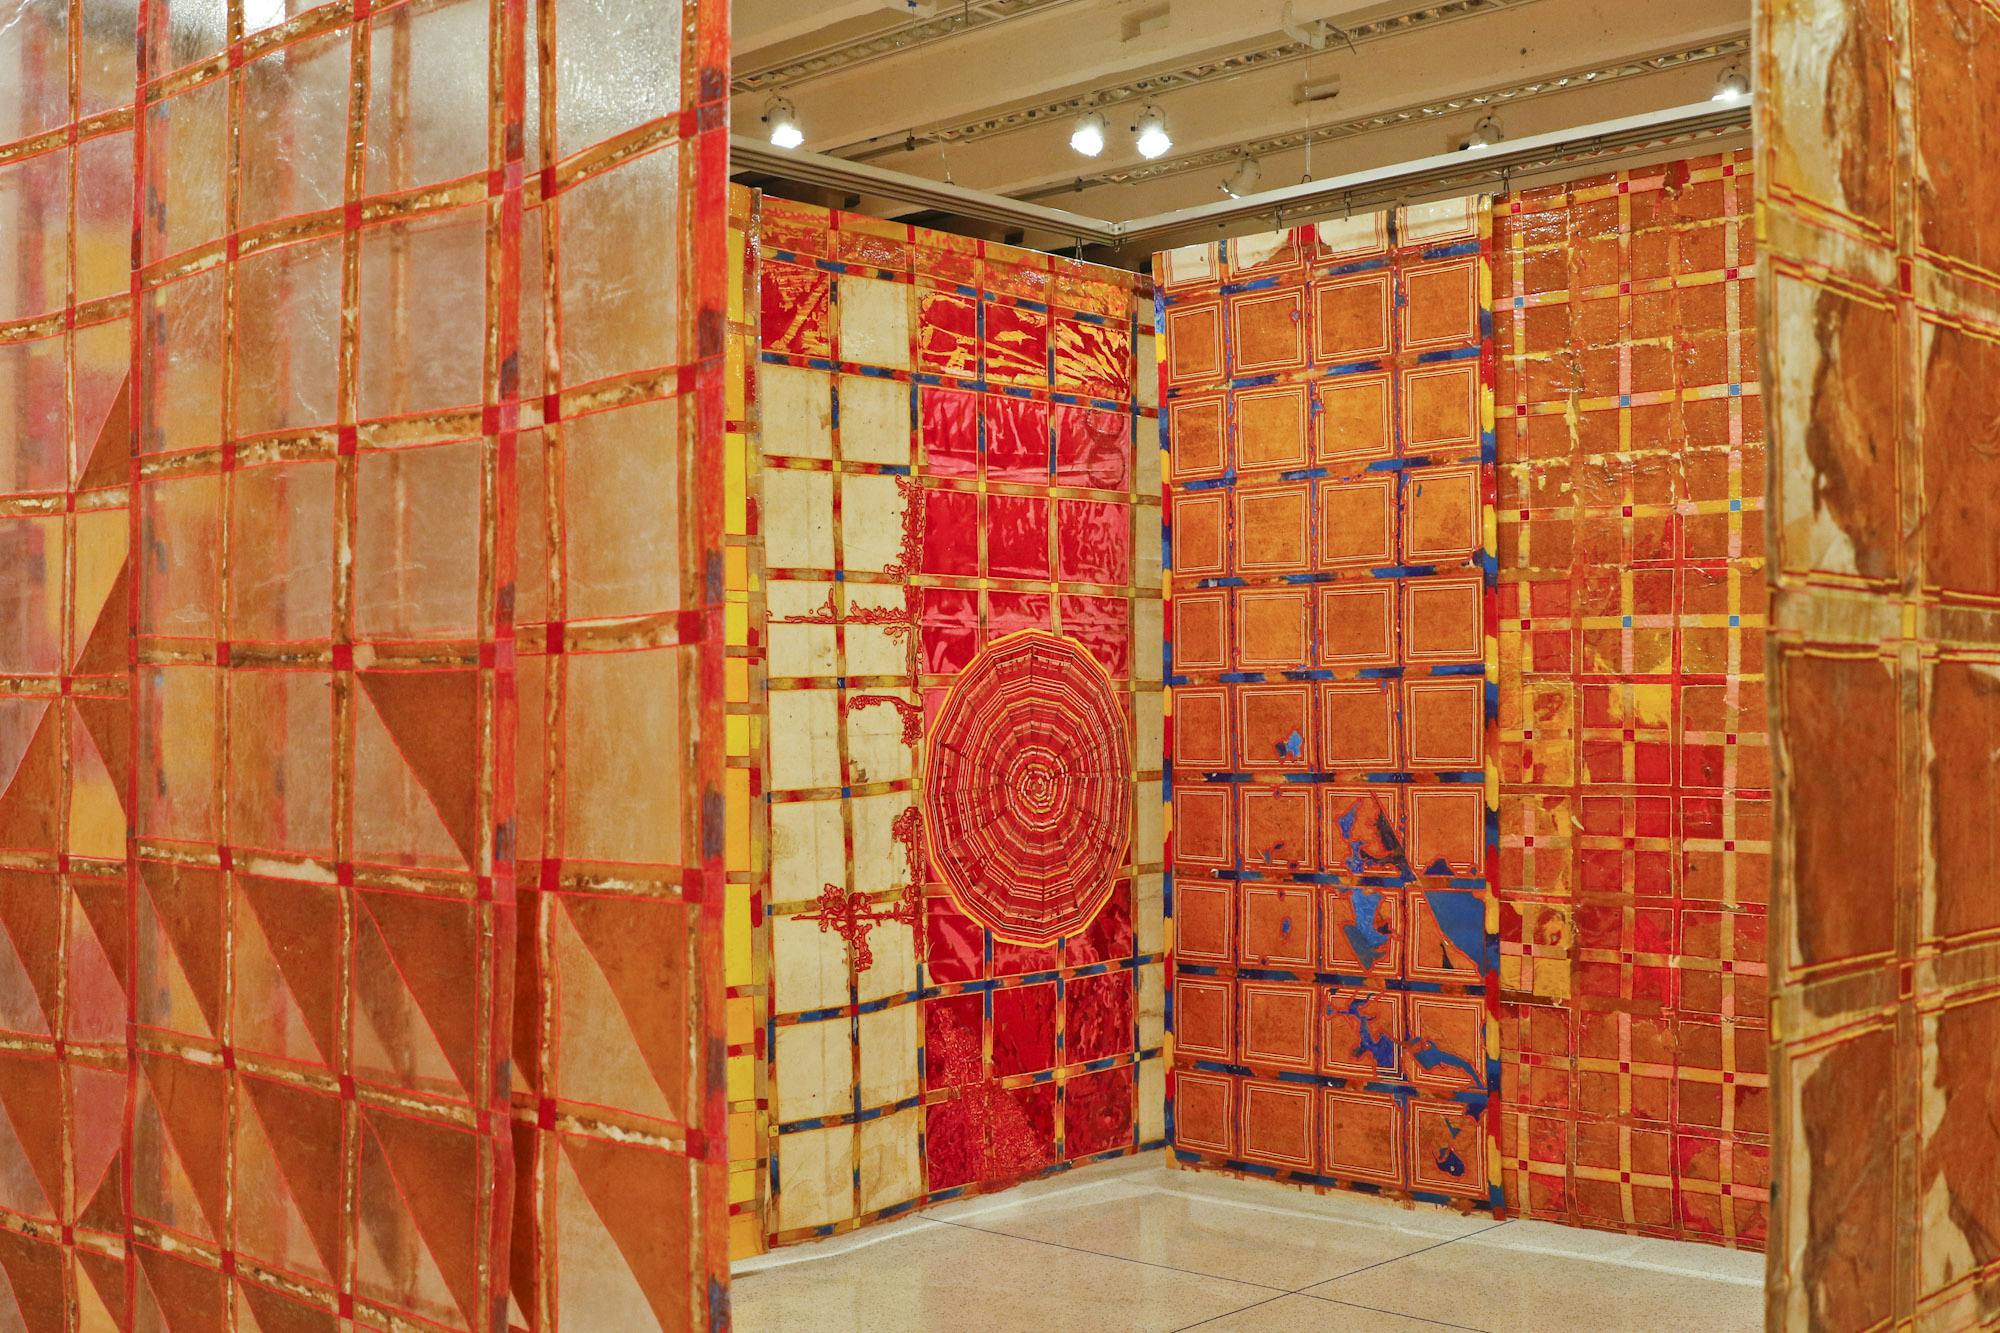 Sala expositiva com obras de Delson Uchôa.